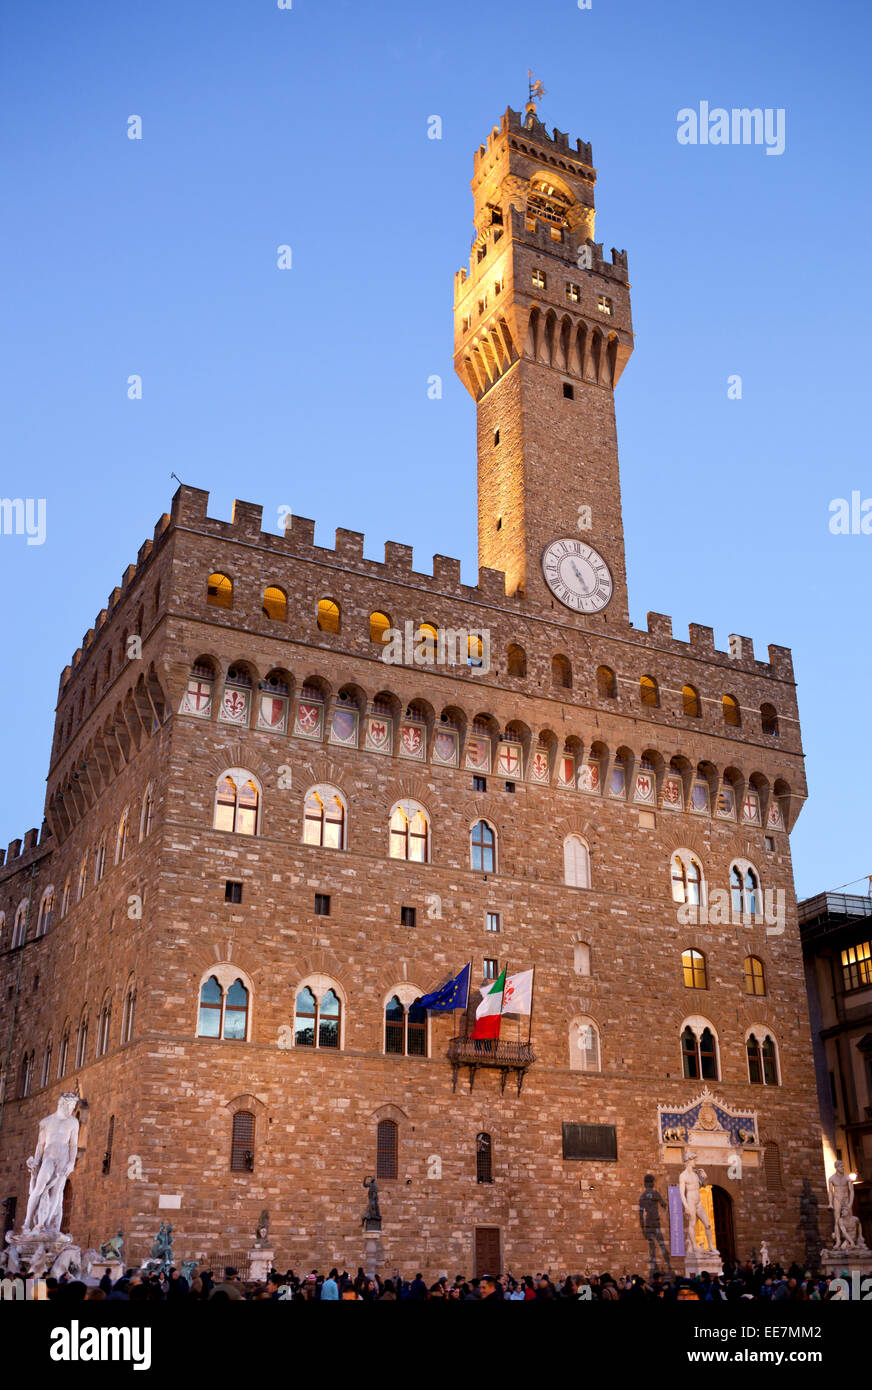 Le Palazzo Vecchio (Vieux palais) un énorme Palais forteresse romane, est l'hôtel de ville de Florence, Italie Banque D'Images